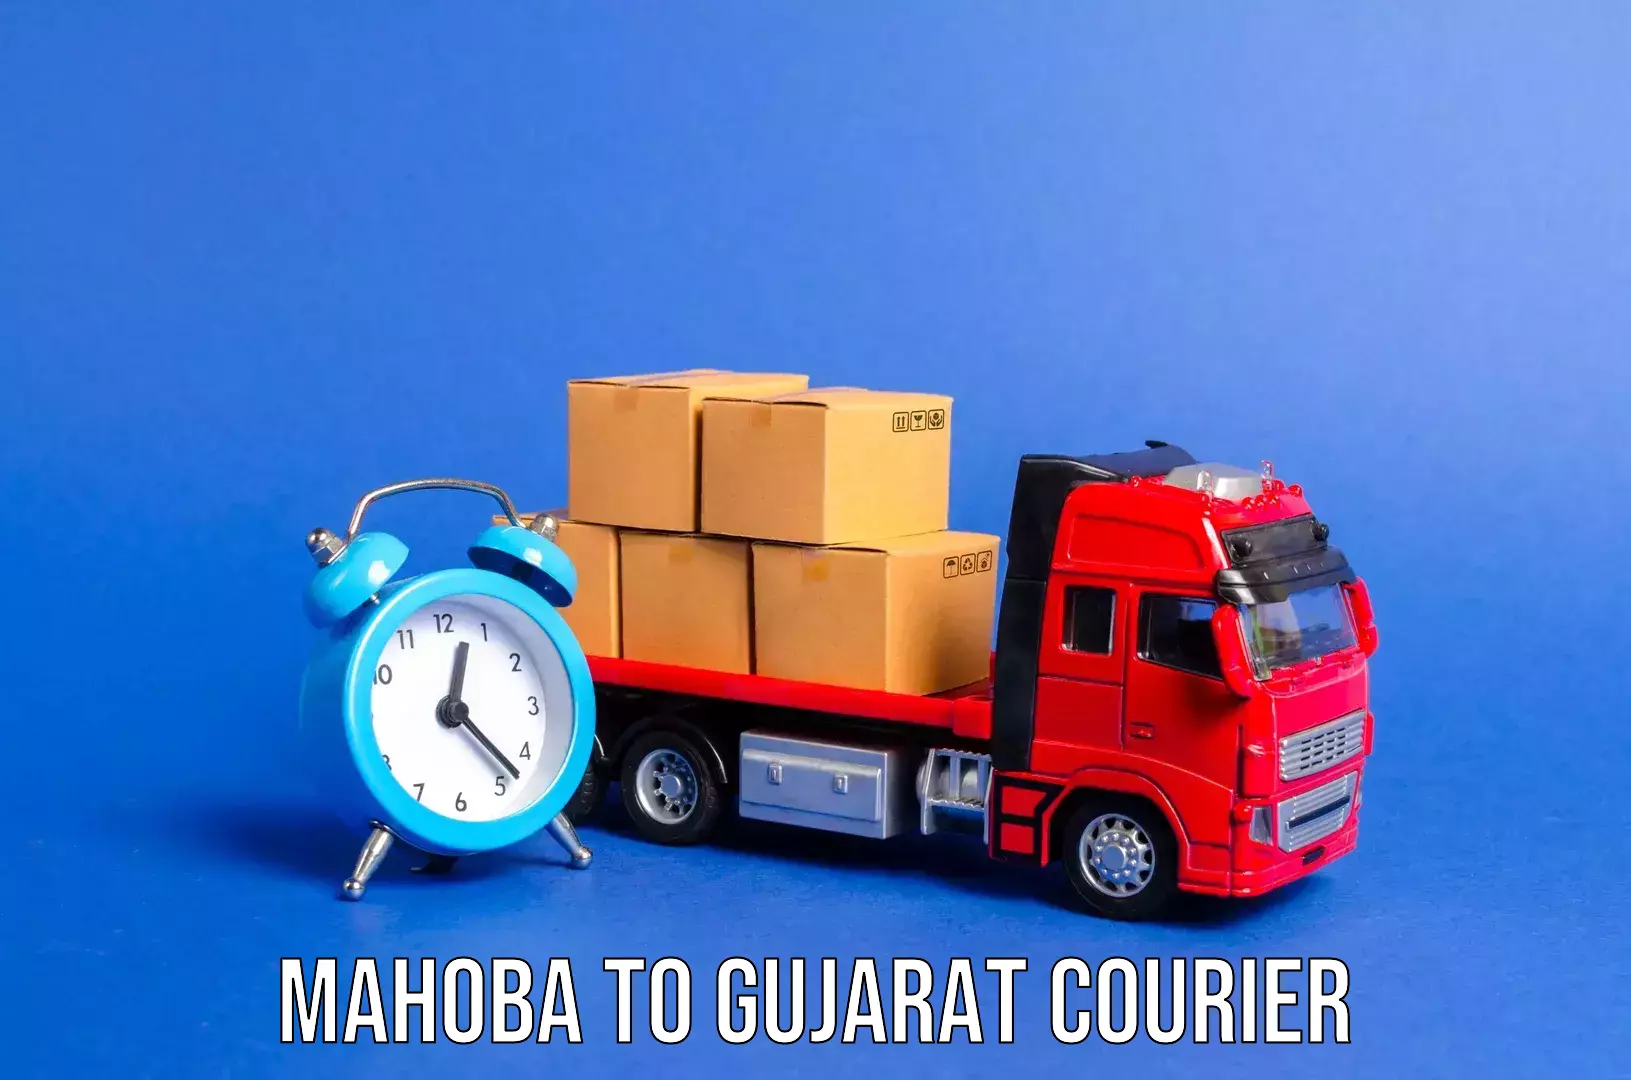 Baggage shipping service Mahoba to Gujarat